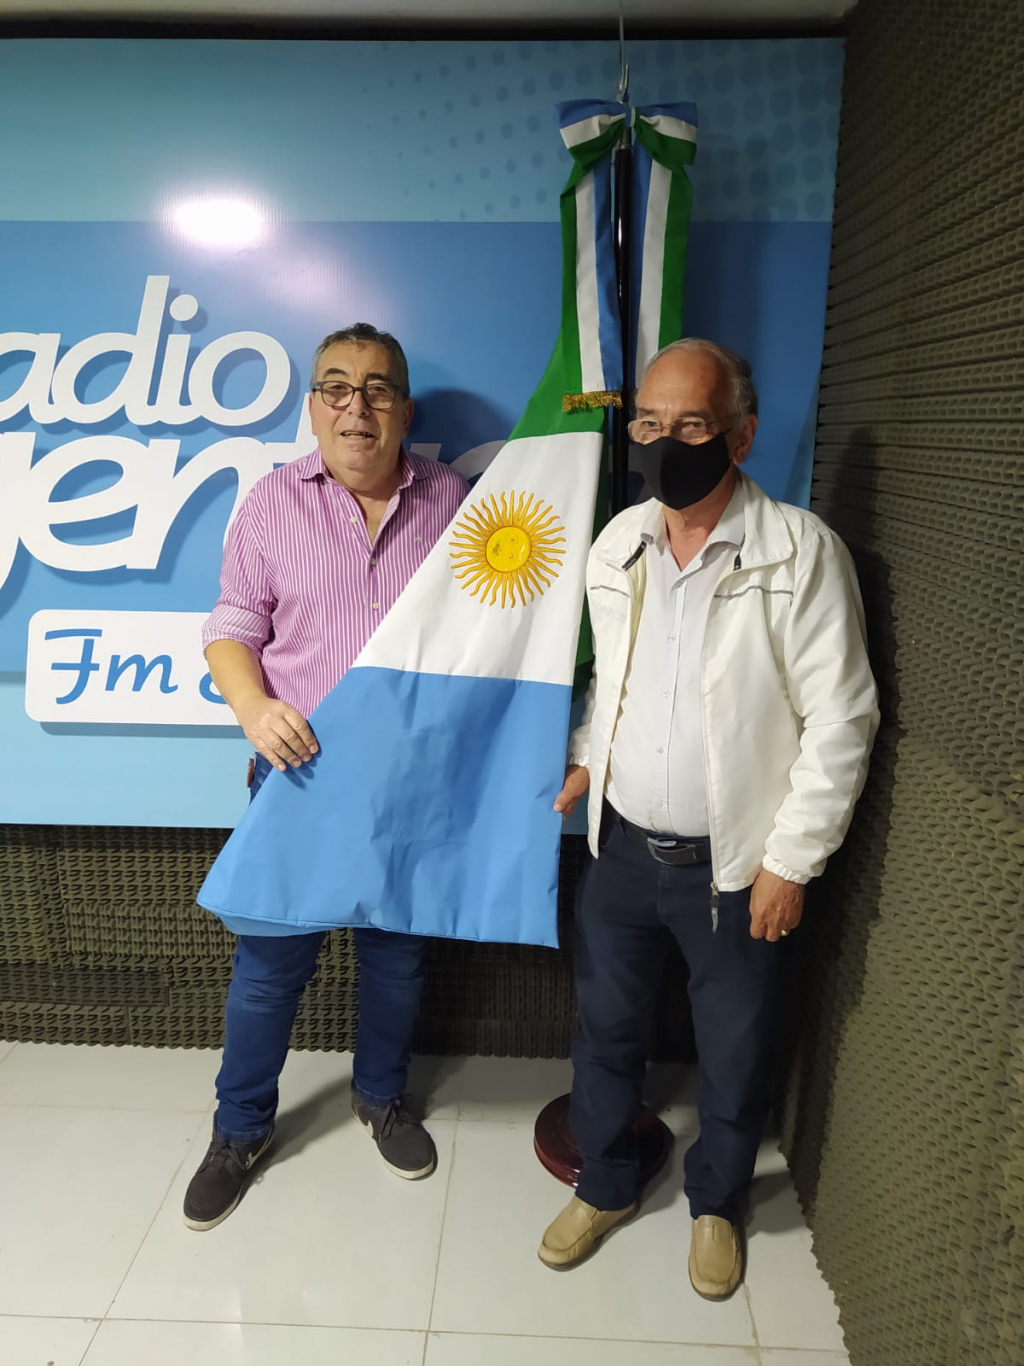 Entrevista exlclusiva de Rafael de Martino al candidato Juan Carlos Bacileff Ivanoff 